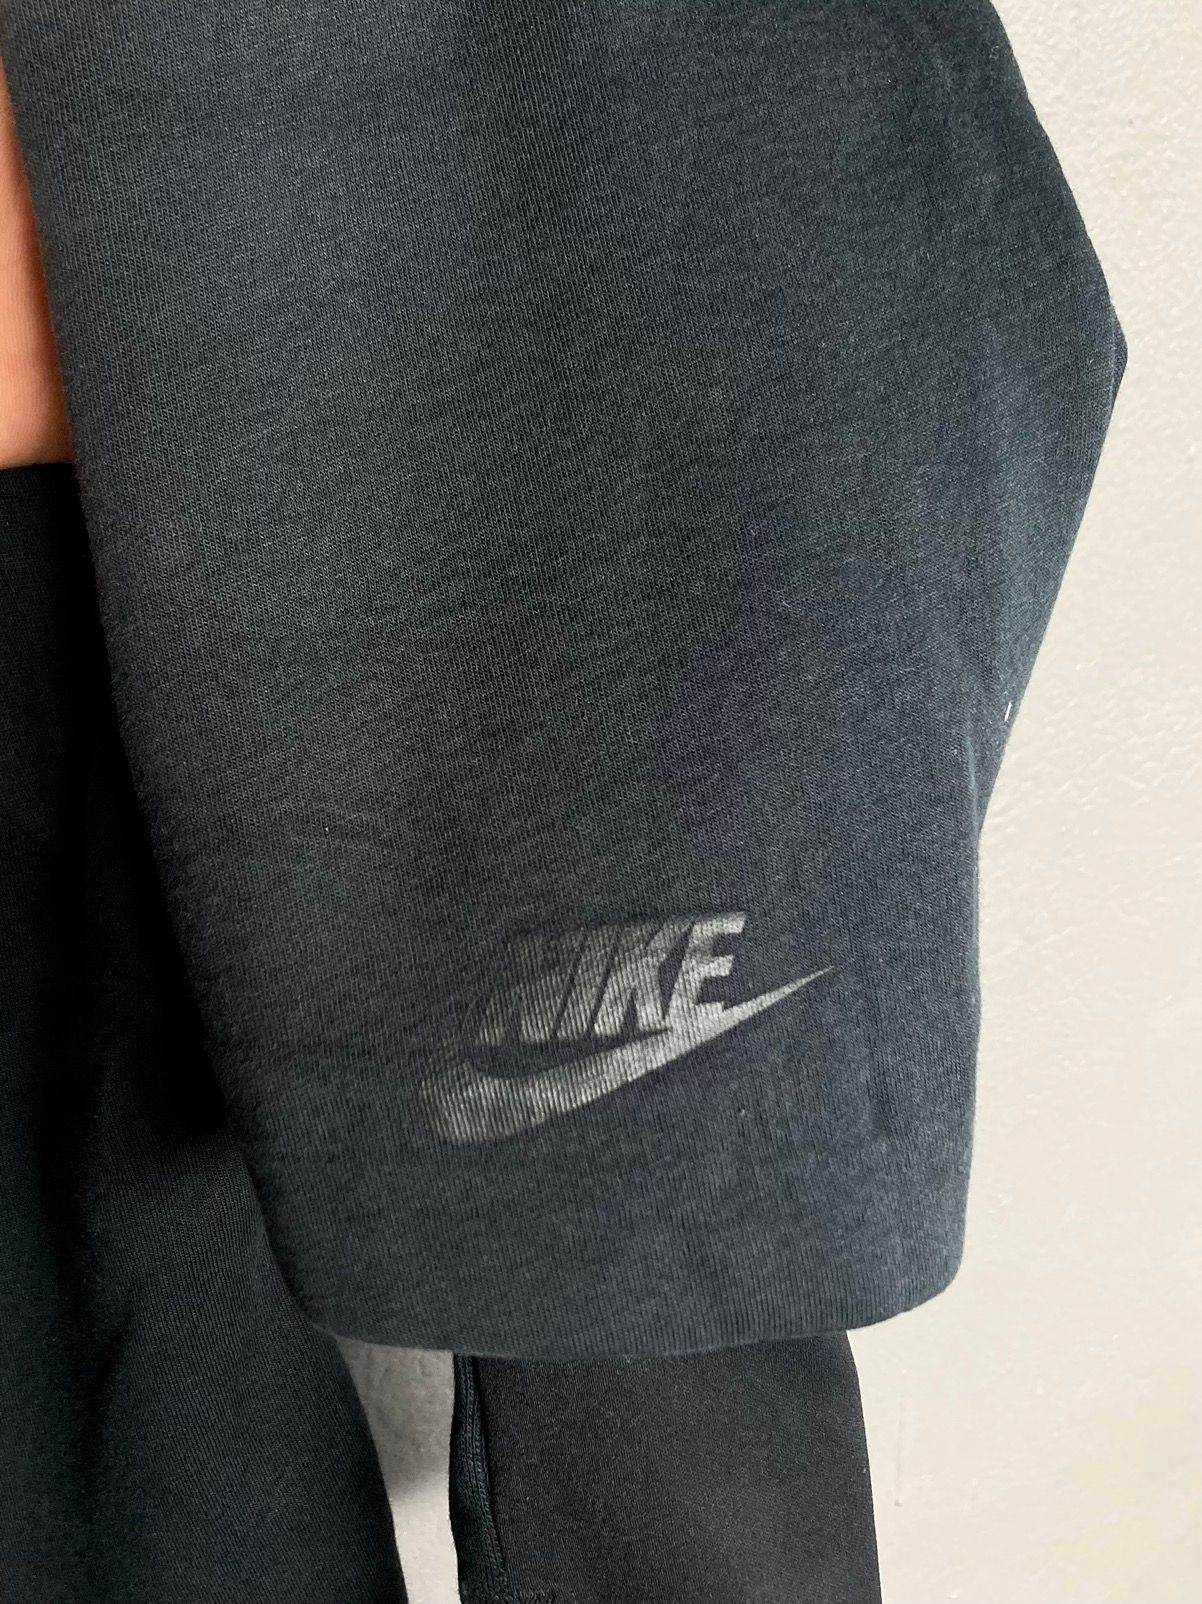 Nike NSW Tech fleece Water Repellent Jacket - 5